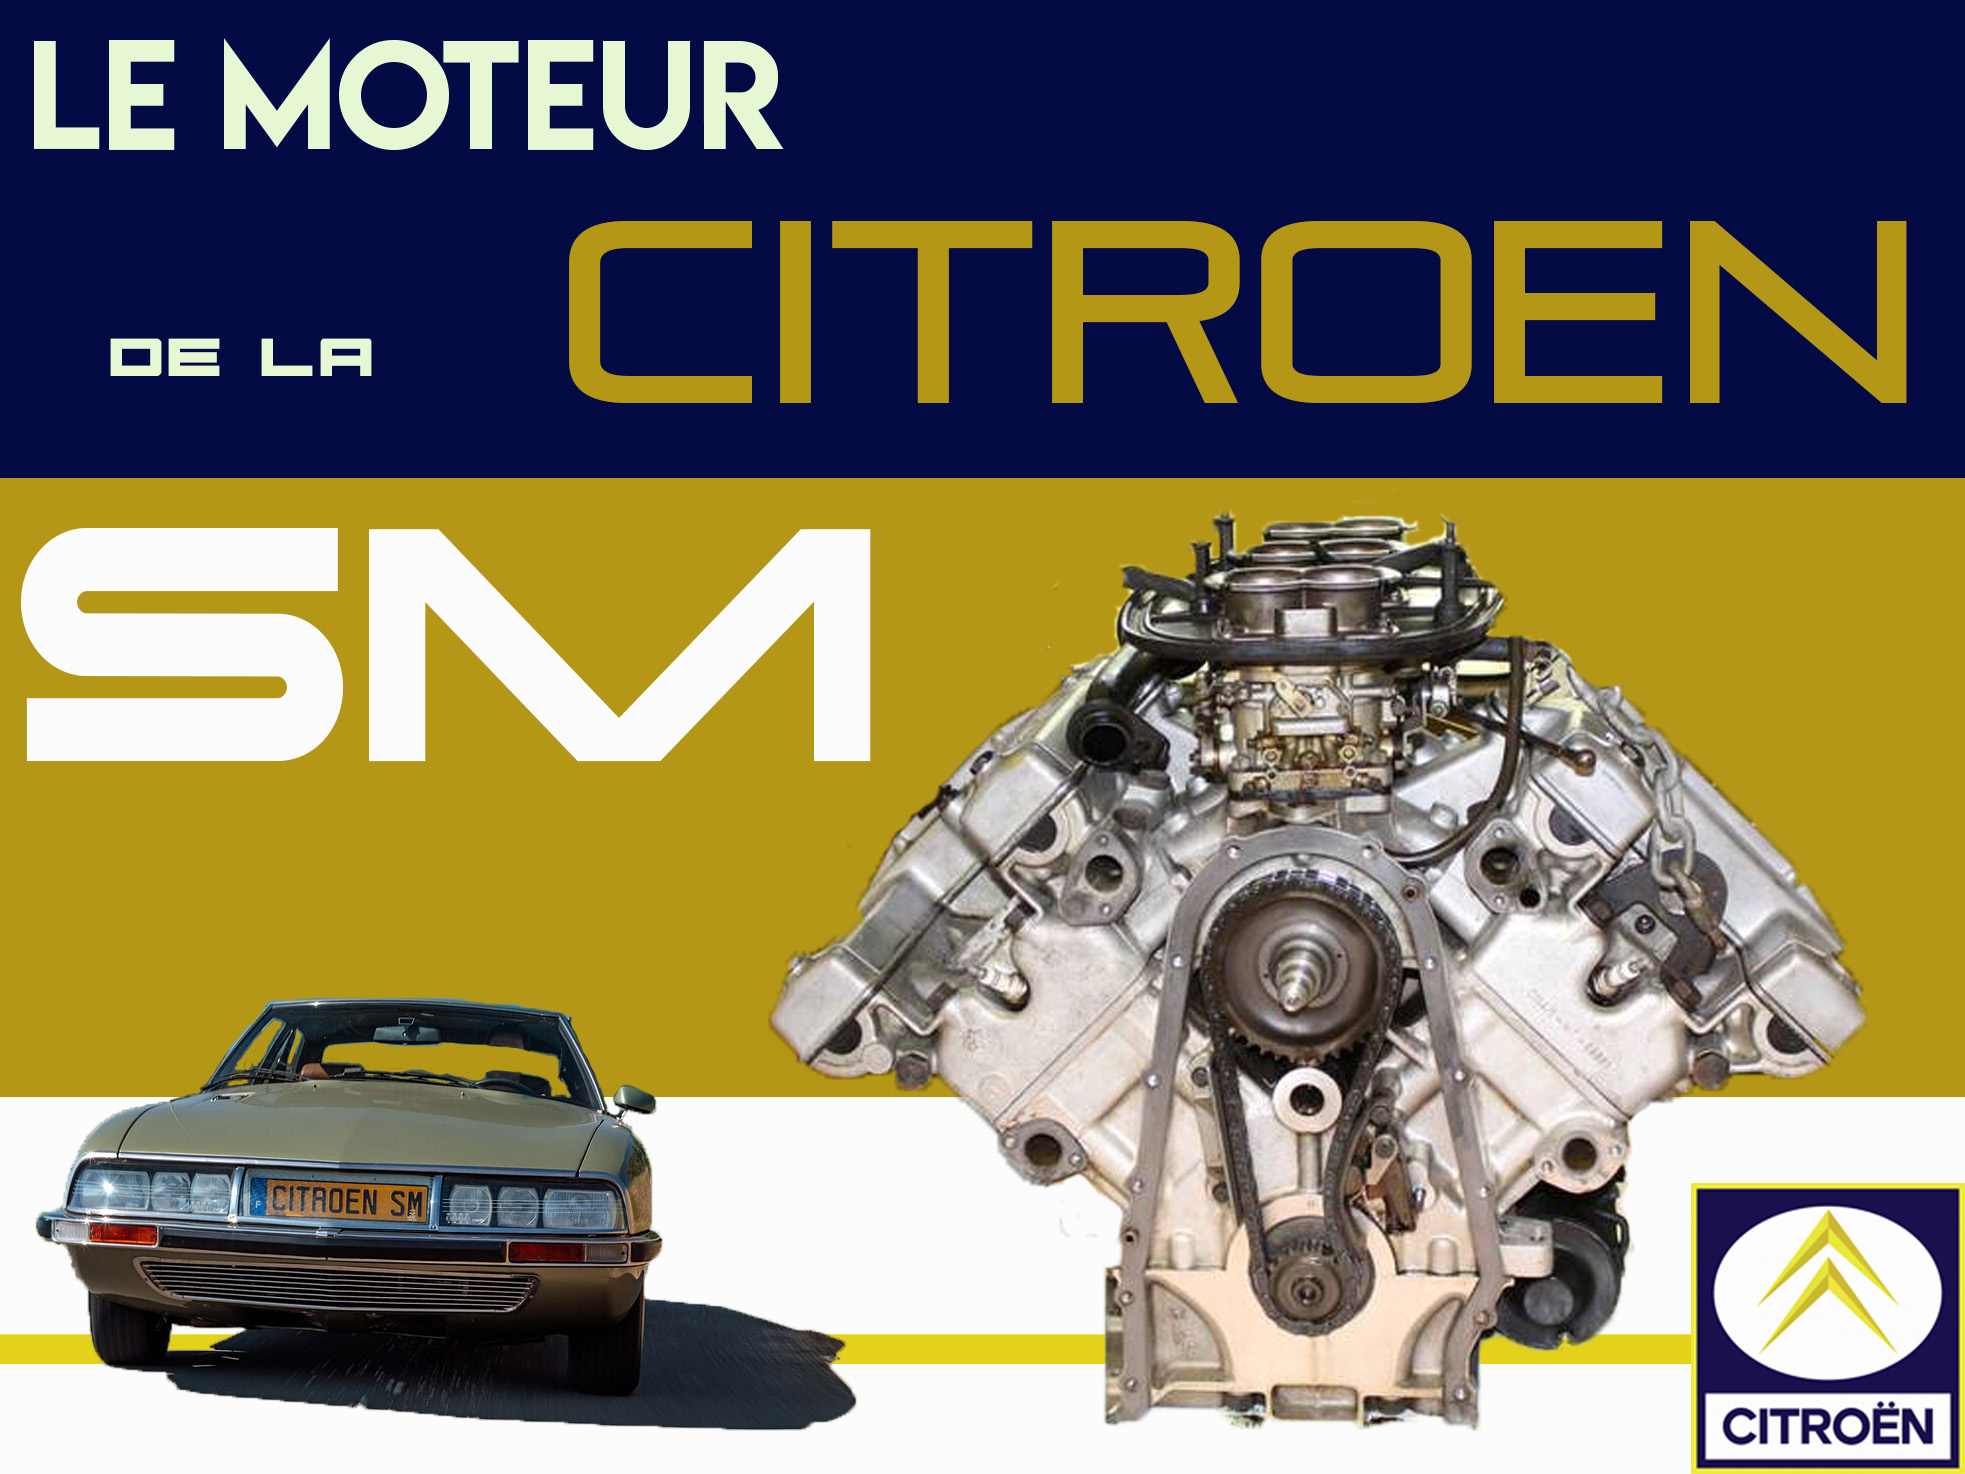 Le moteur de la Citroën SM - Embiellage Collector